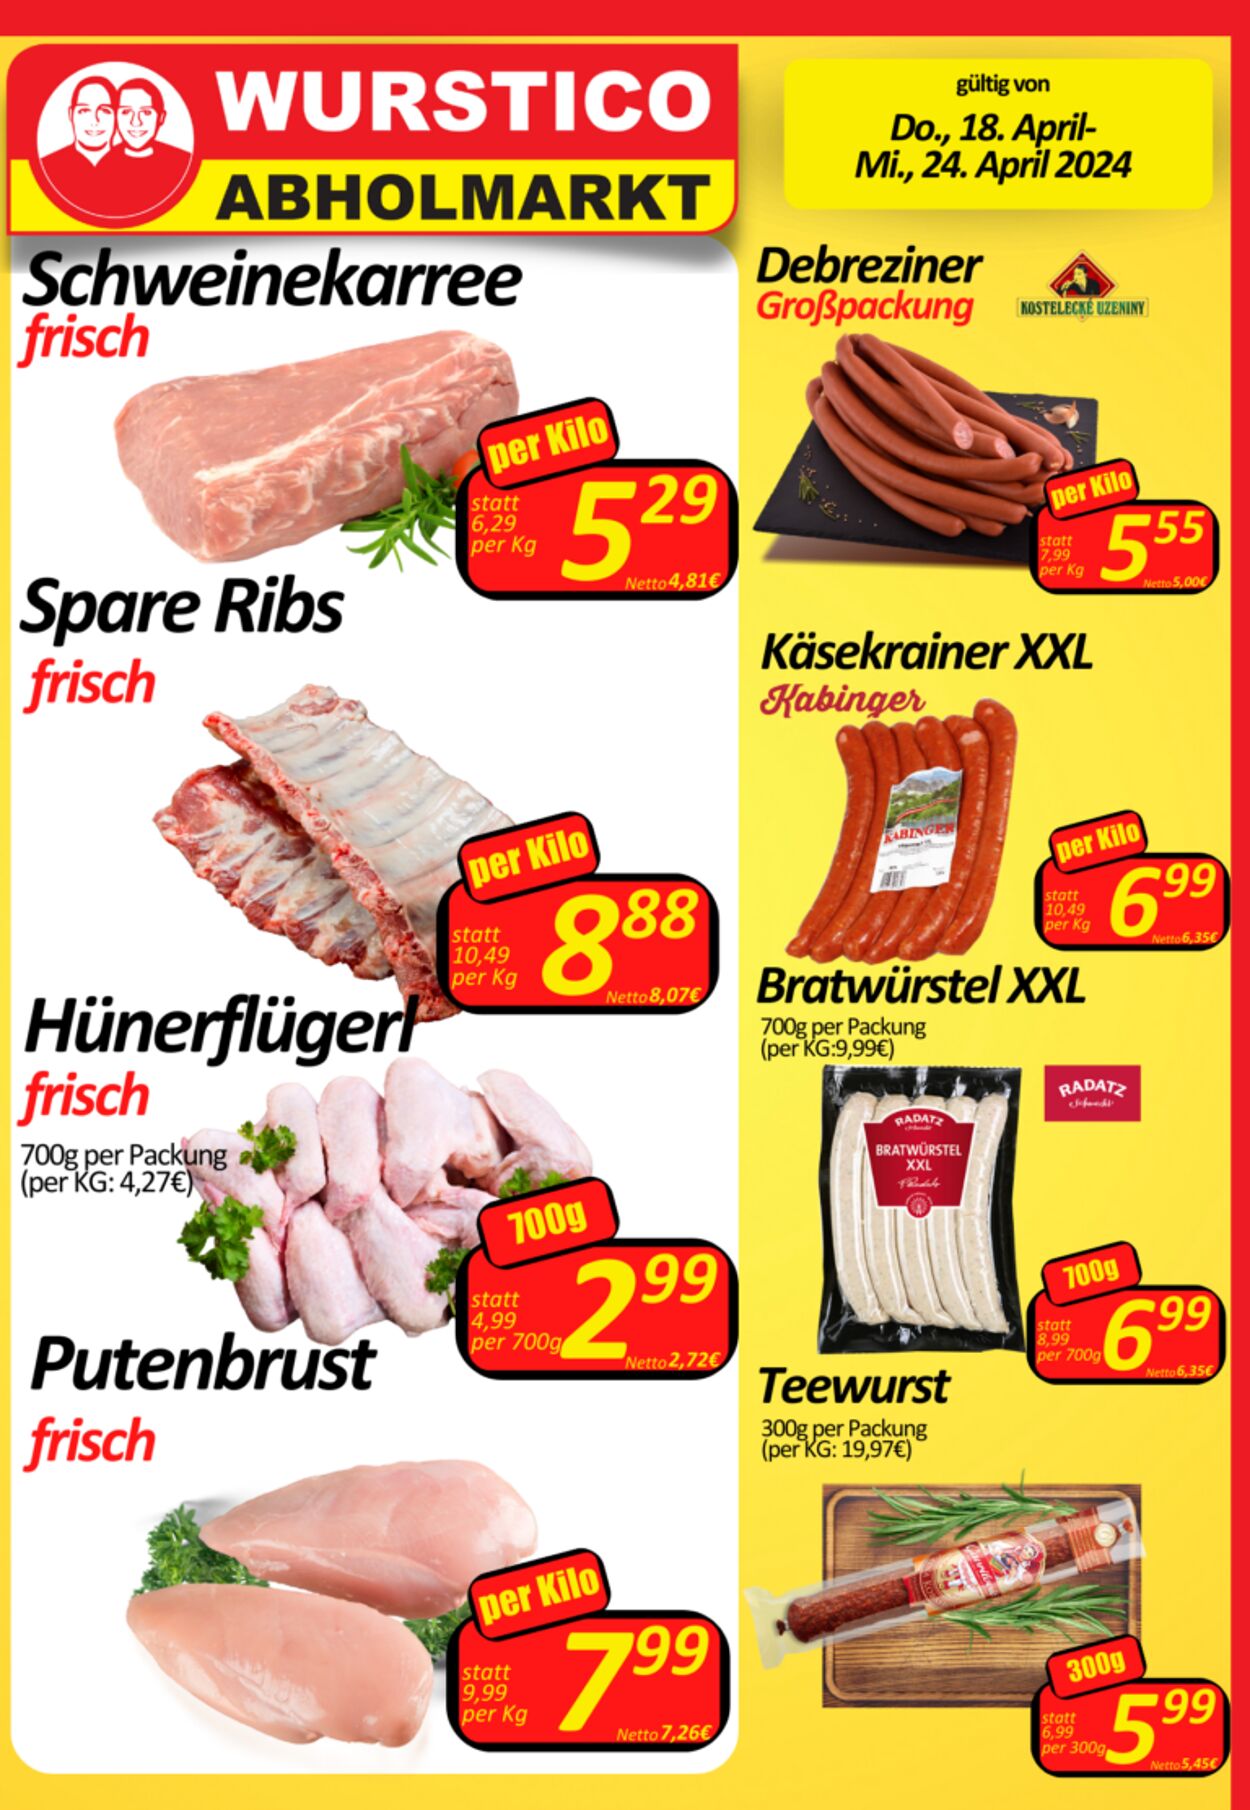 Prospekt Wurstico - Wurstico Abholmarkt – Wurst, Fleischwaren und mehr zu FabrikspreisenAktuelle Angebote bei Wurstico 18 Apr, 2024 - 24 Apr, 2024